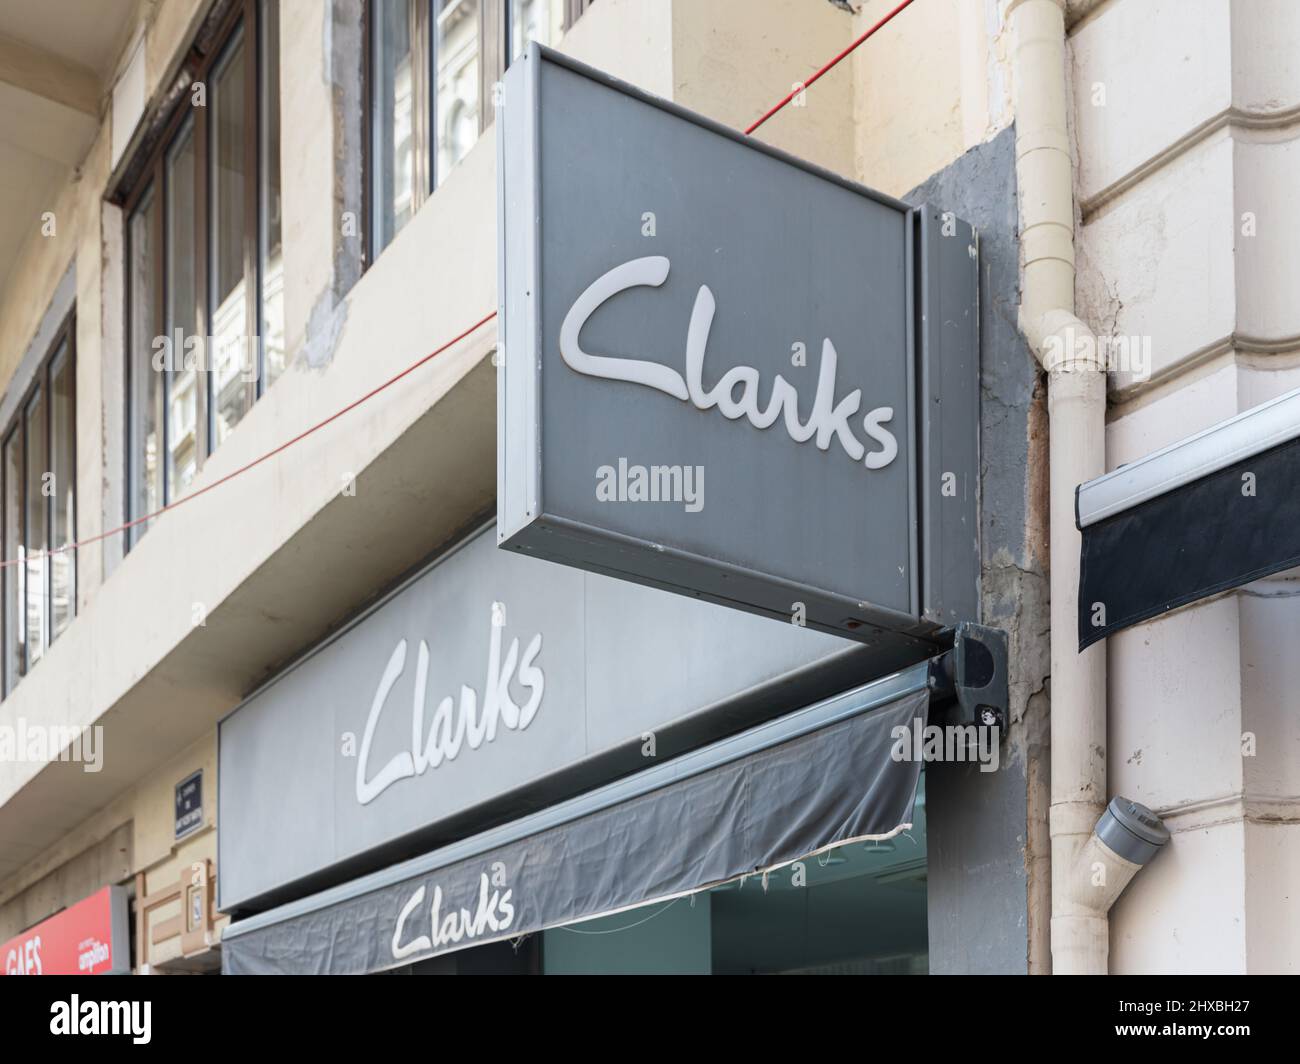 VALENCIA, SPAGNA - 10 MARZO 2022: Clarks è un'azienda britannica di produzione di calzature Foto Stock